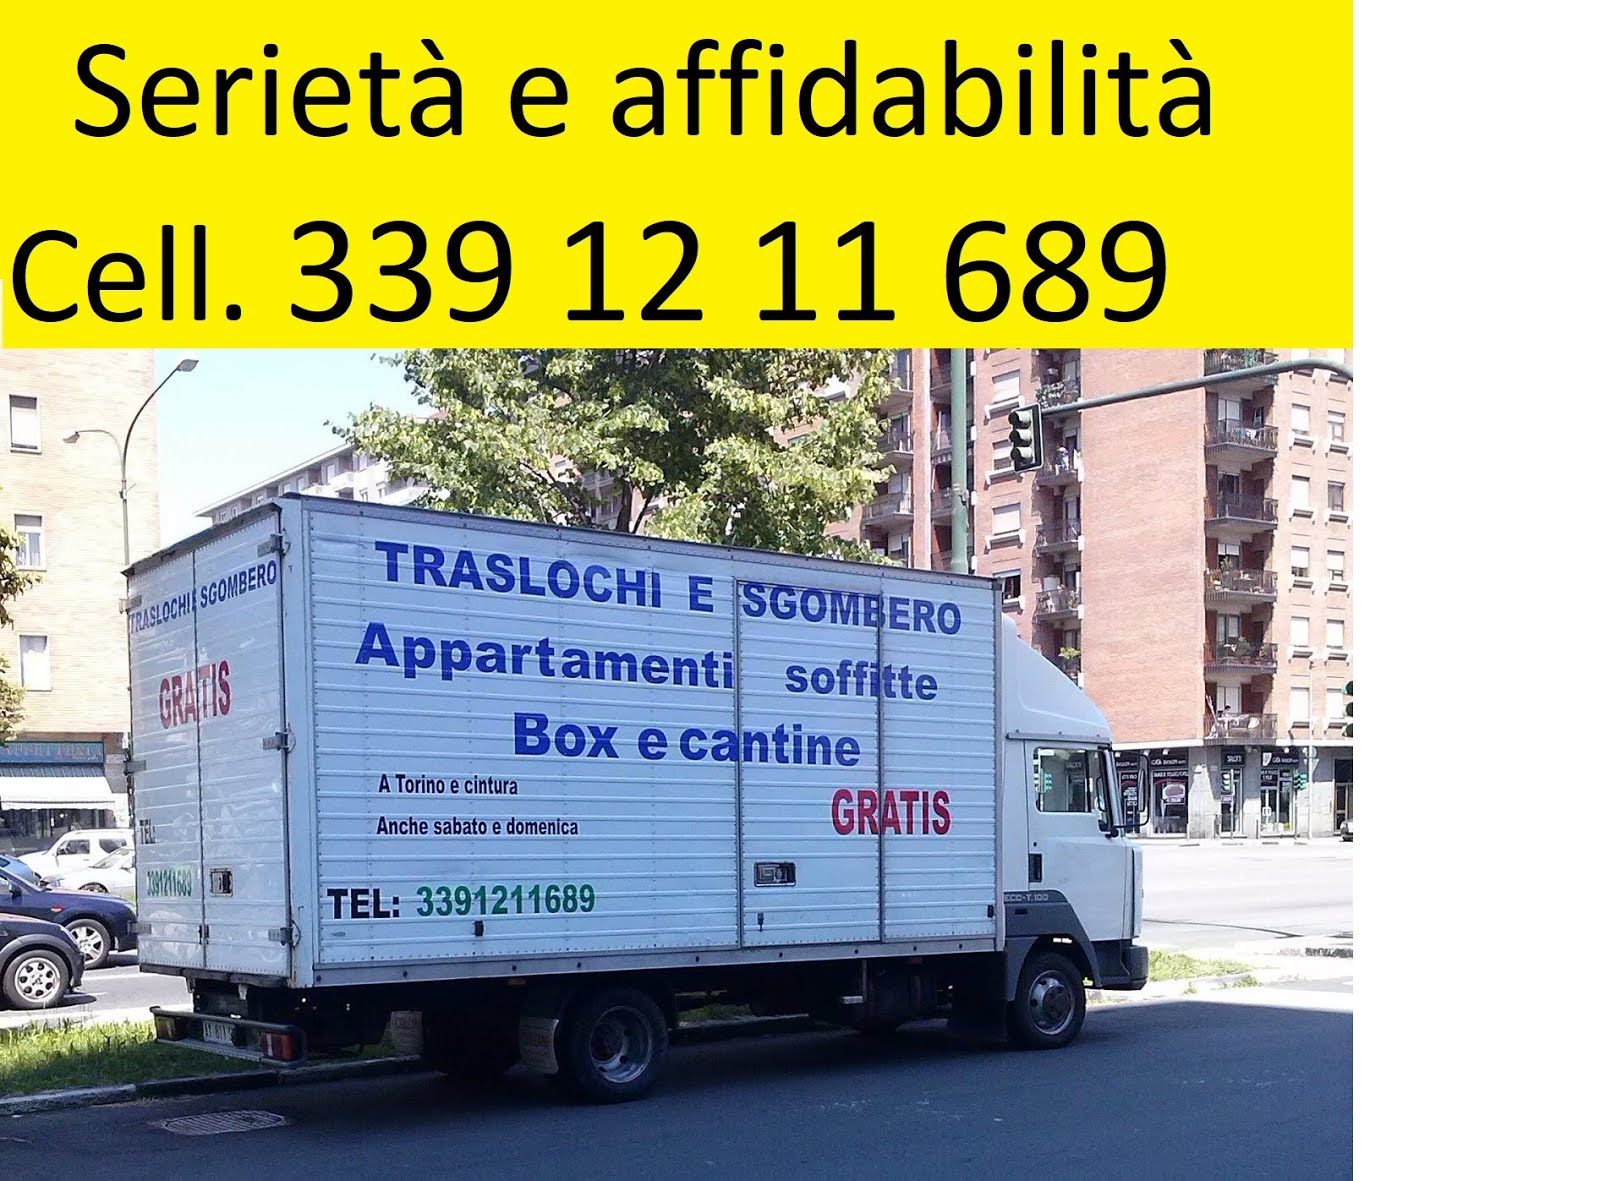 Sgombero Tutto Gratis a Torino cell. 339 12 11 689